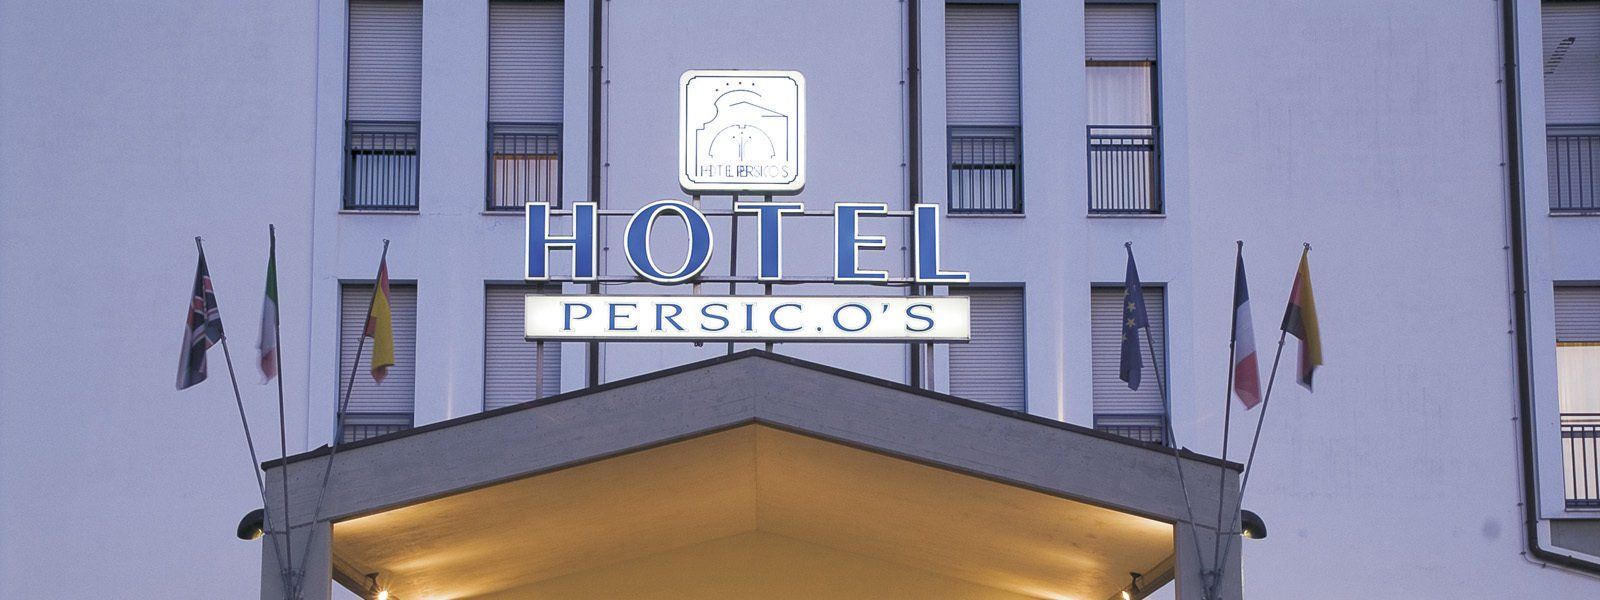 persicos hotel